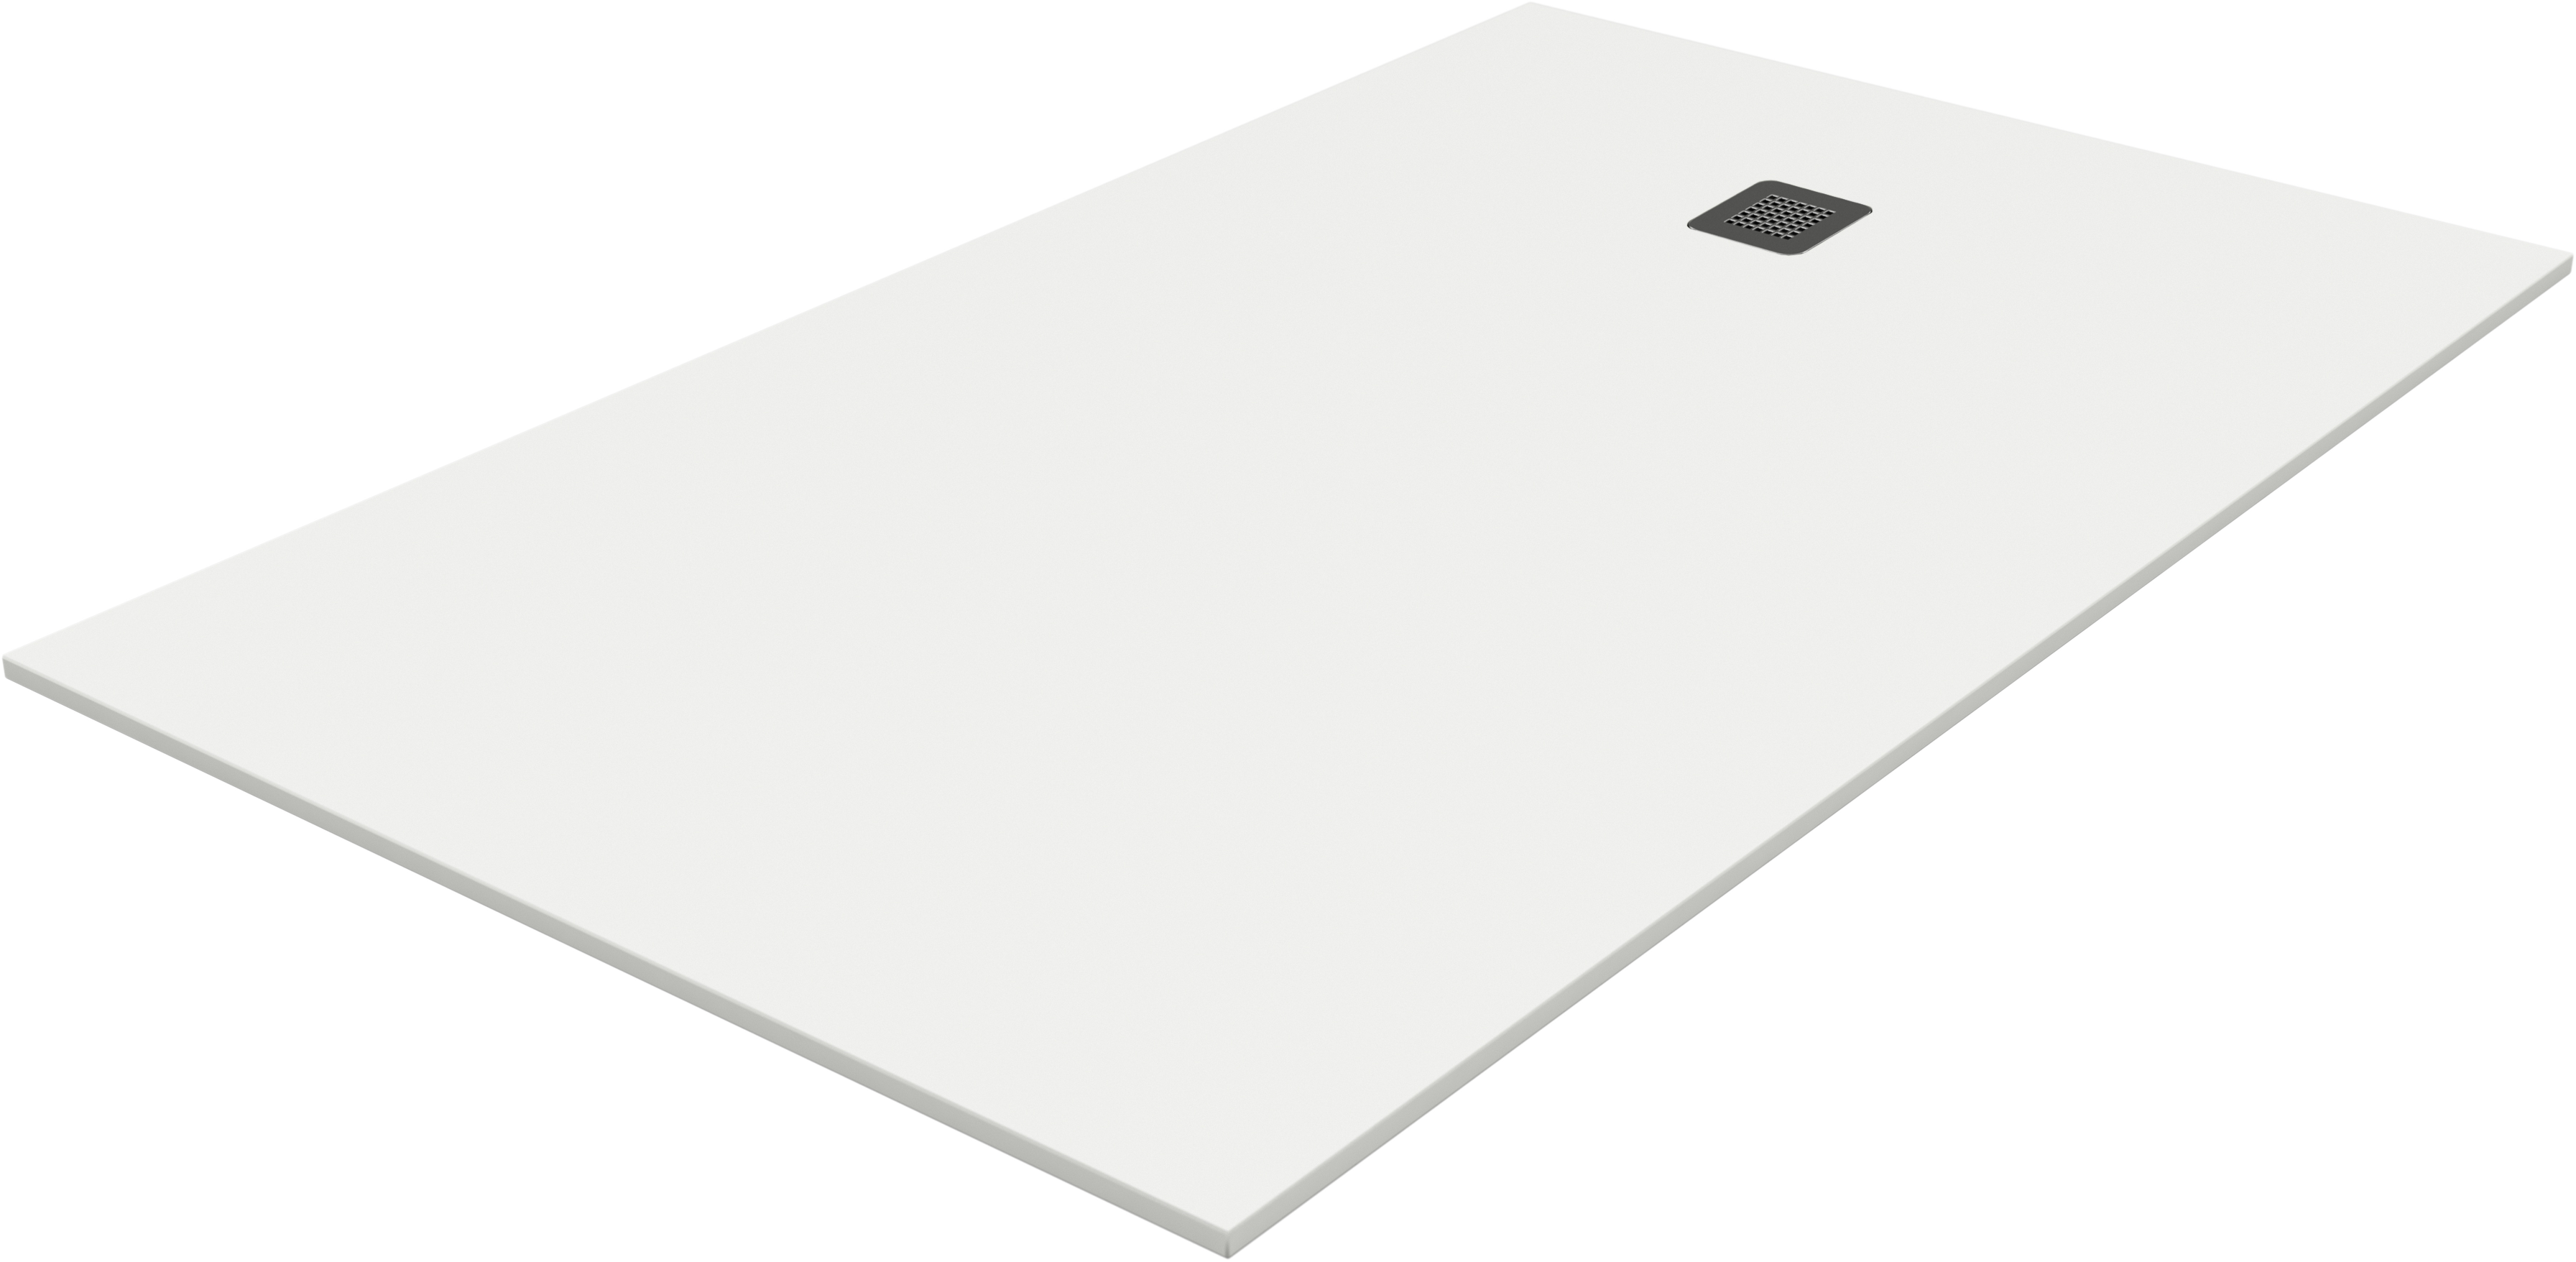 Plato de ducha pietra 120x70 cm blanco